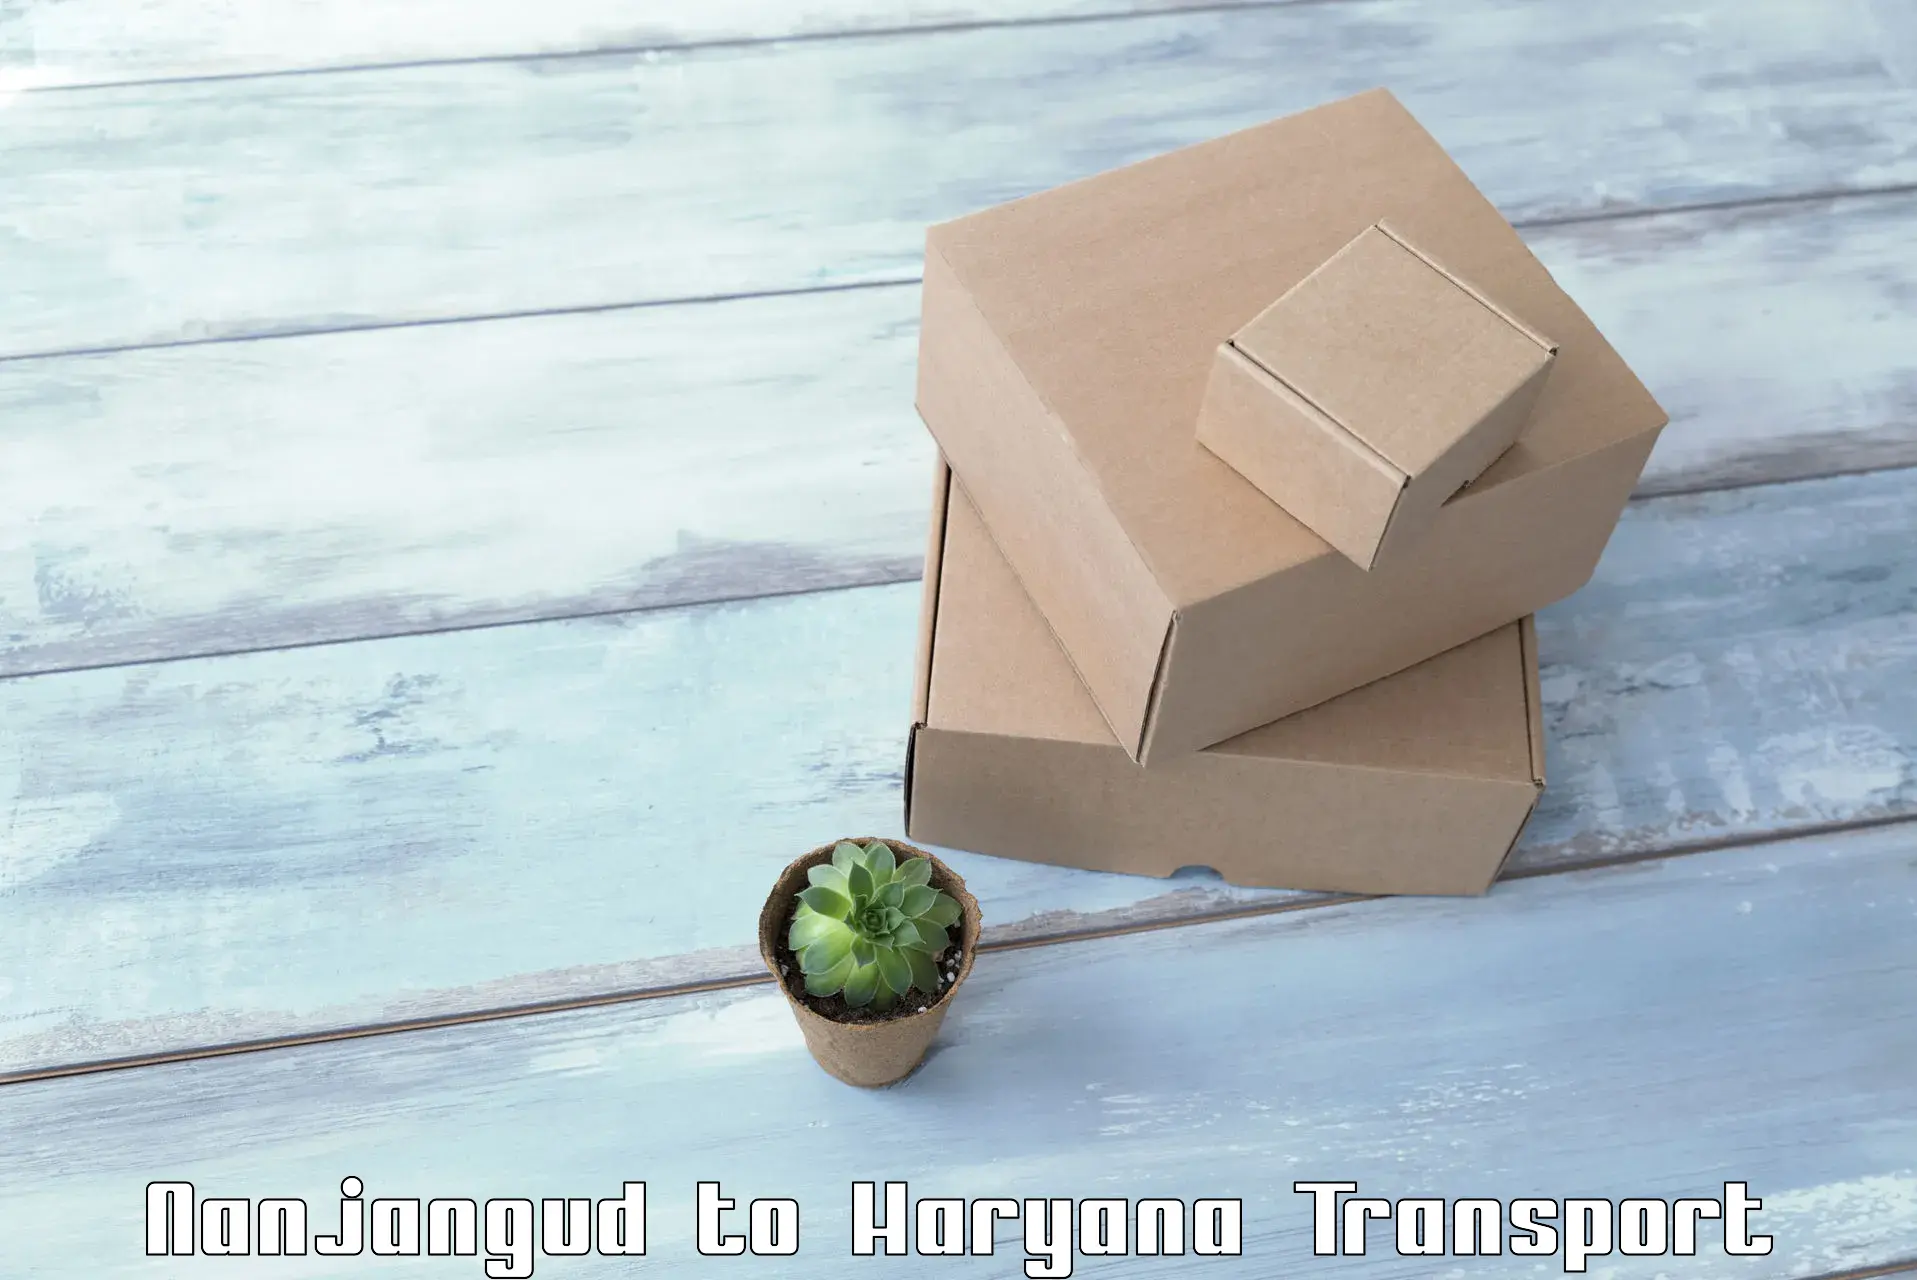 Online transport booking Nanjangud to IIIT Sonepat